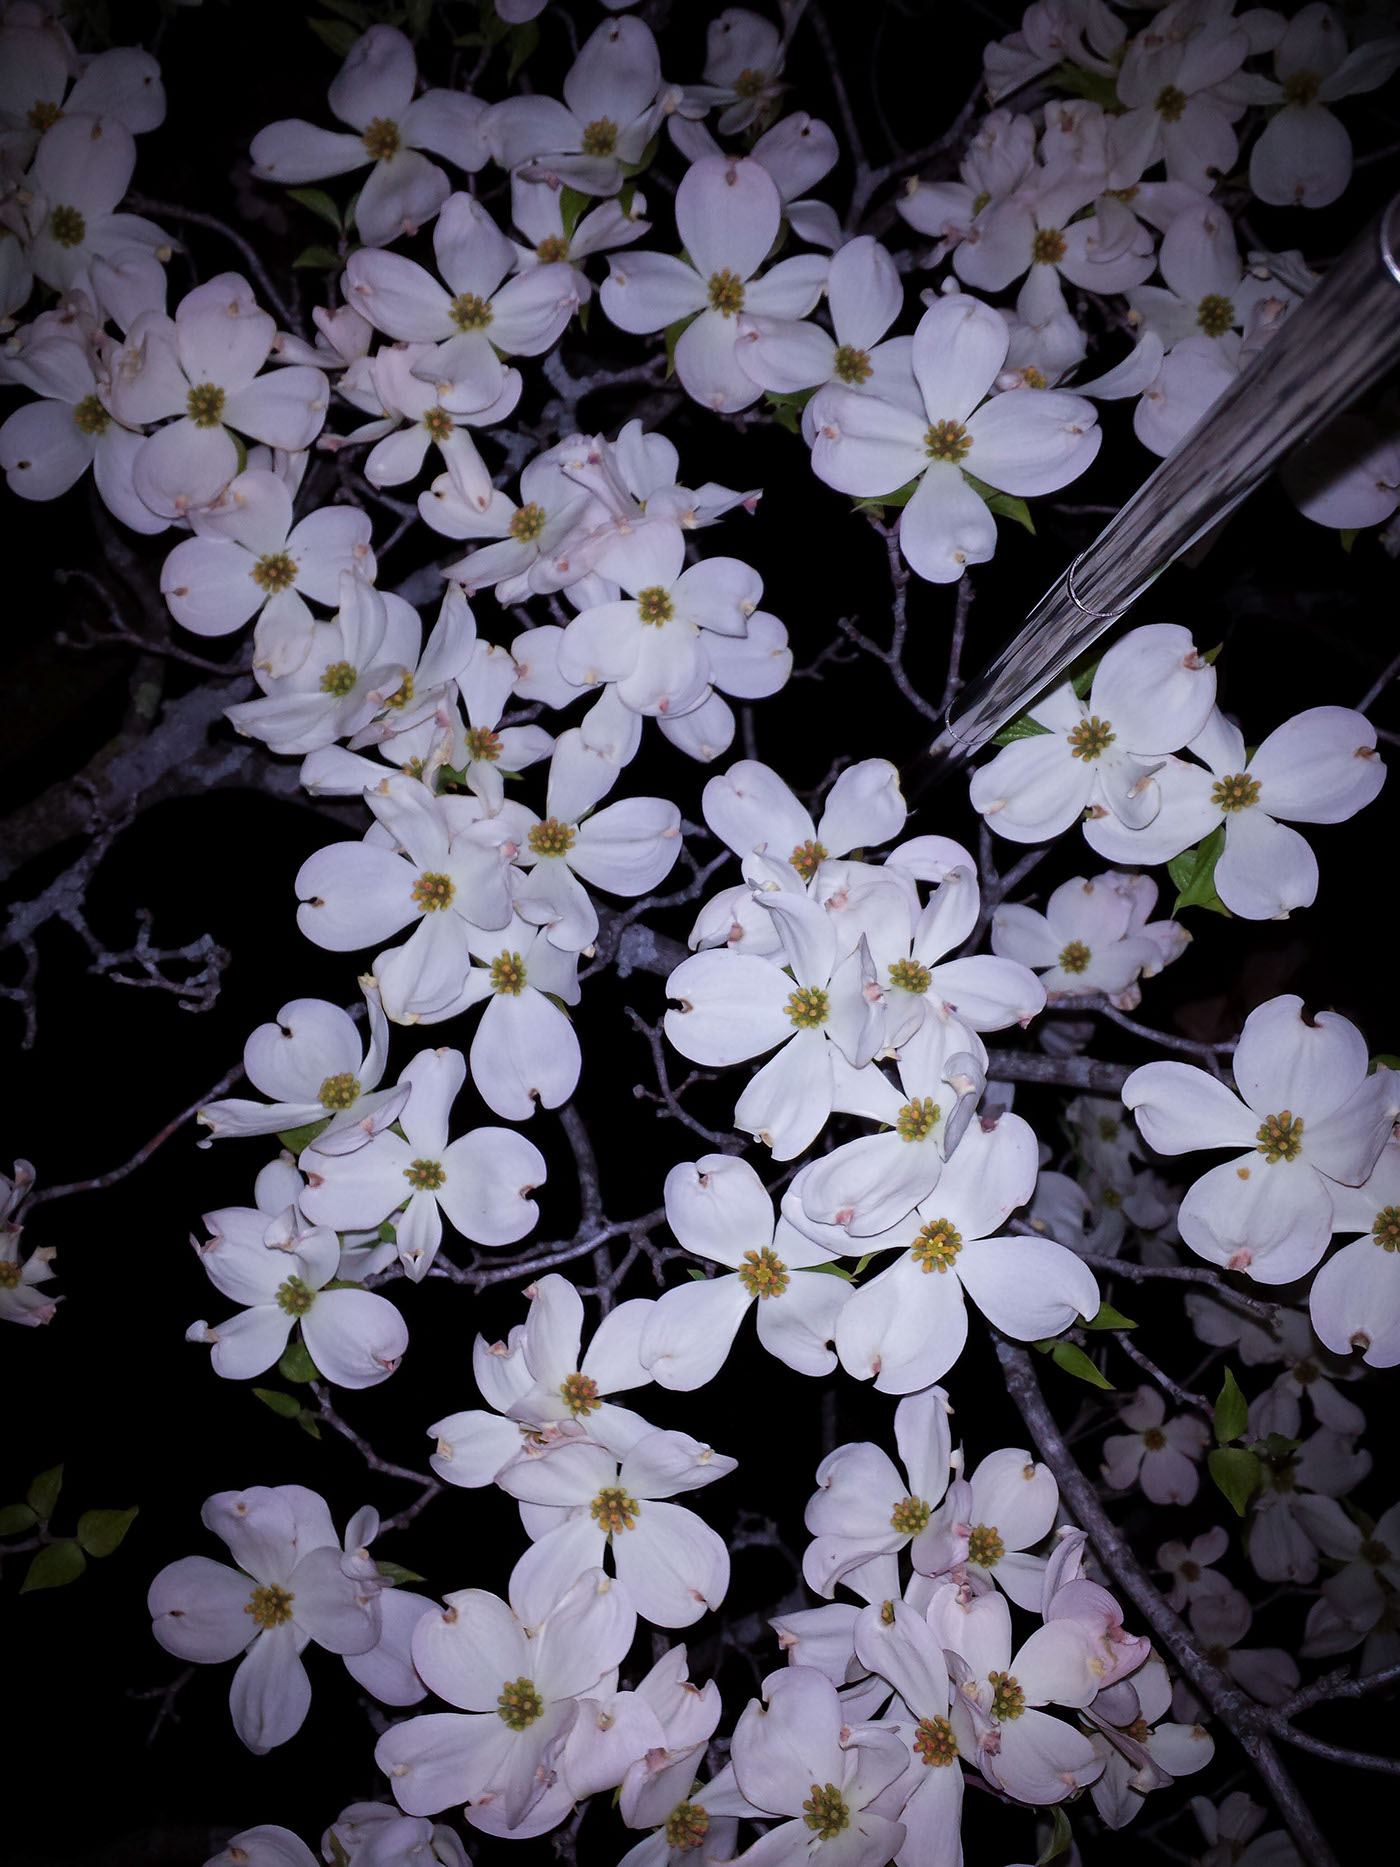 Selfie stick selfie stick series night flower floral bloom selfie krawec contrast gif photo